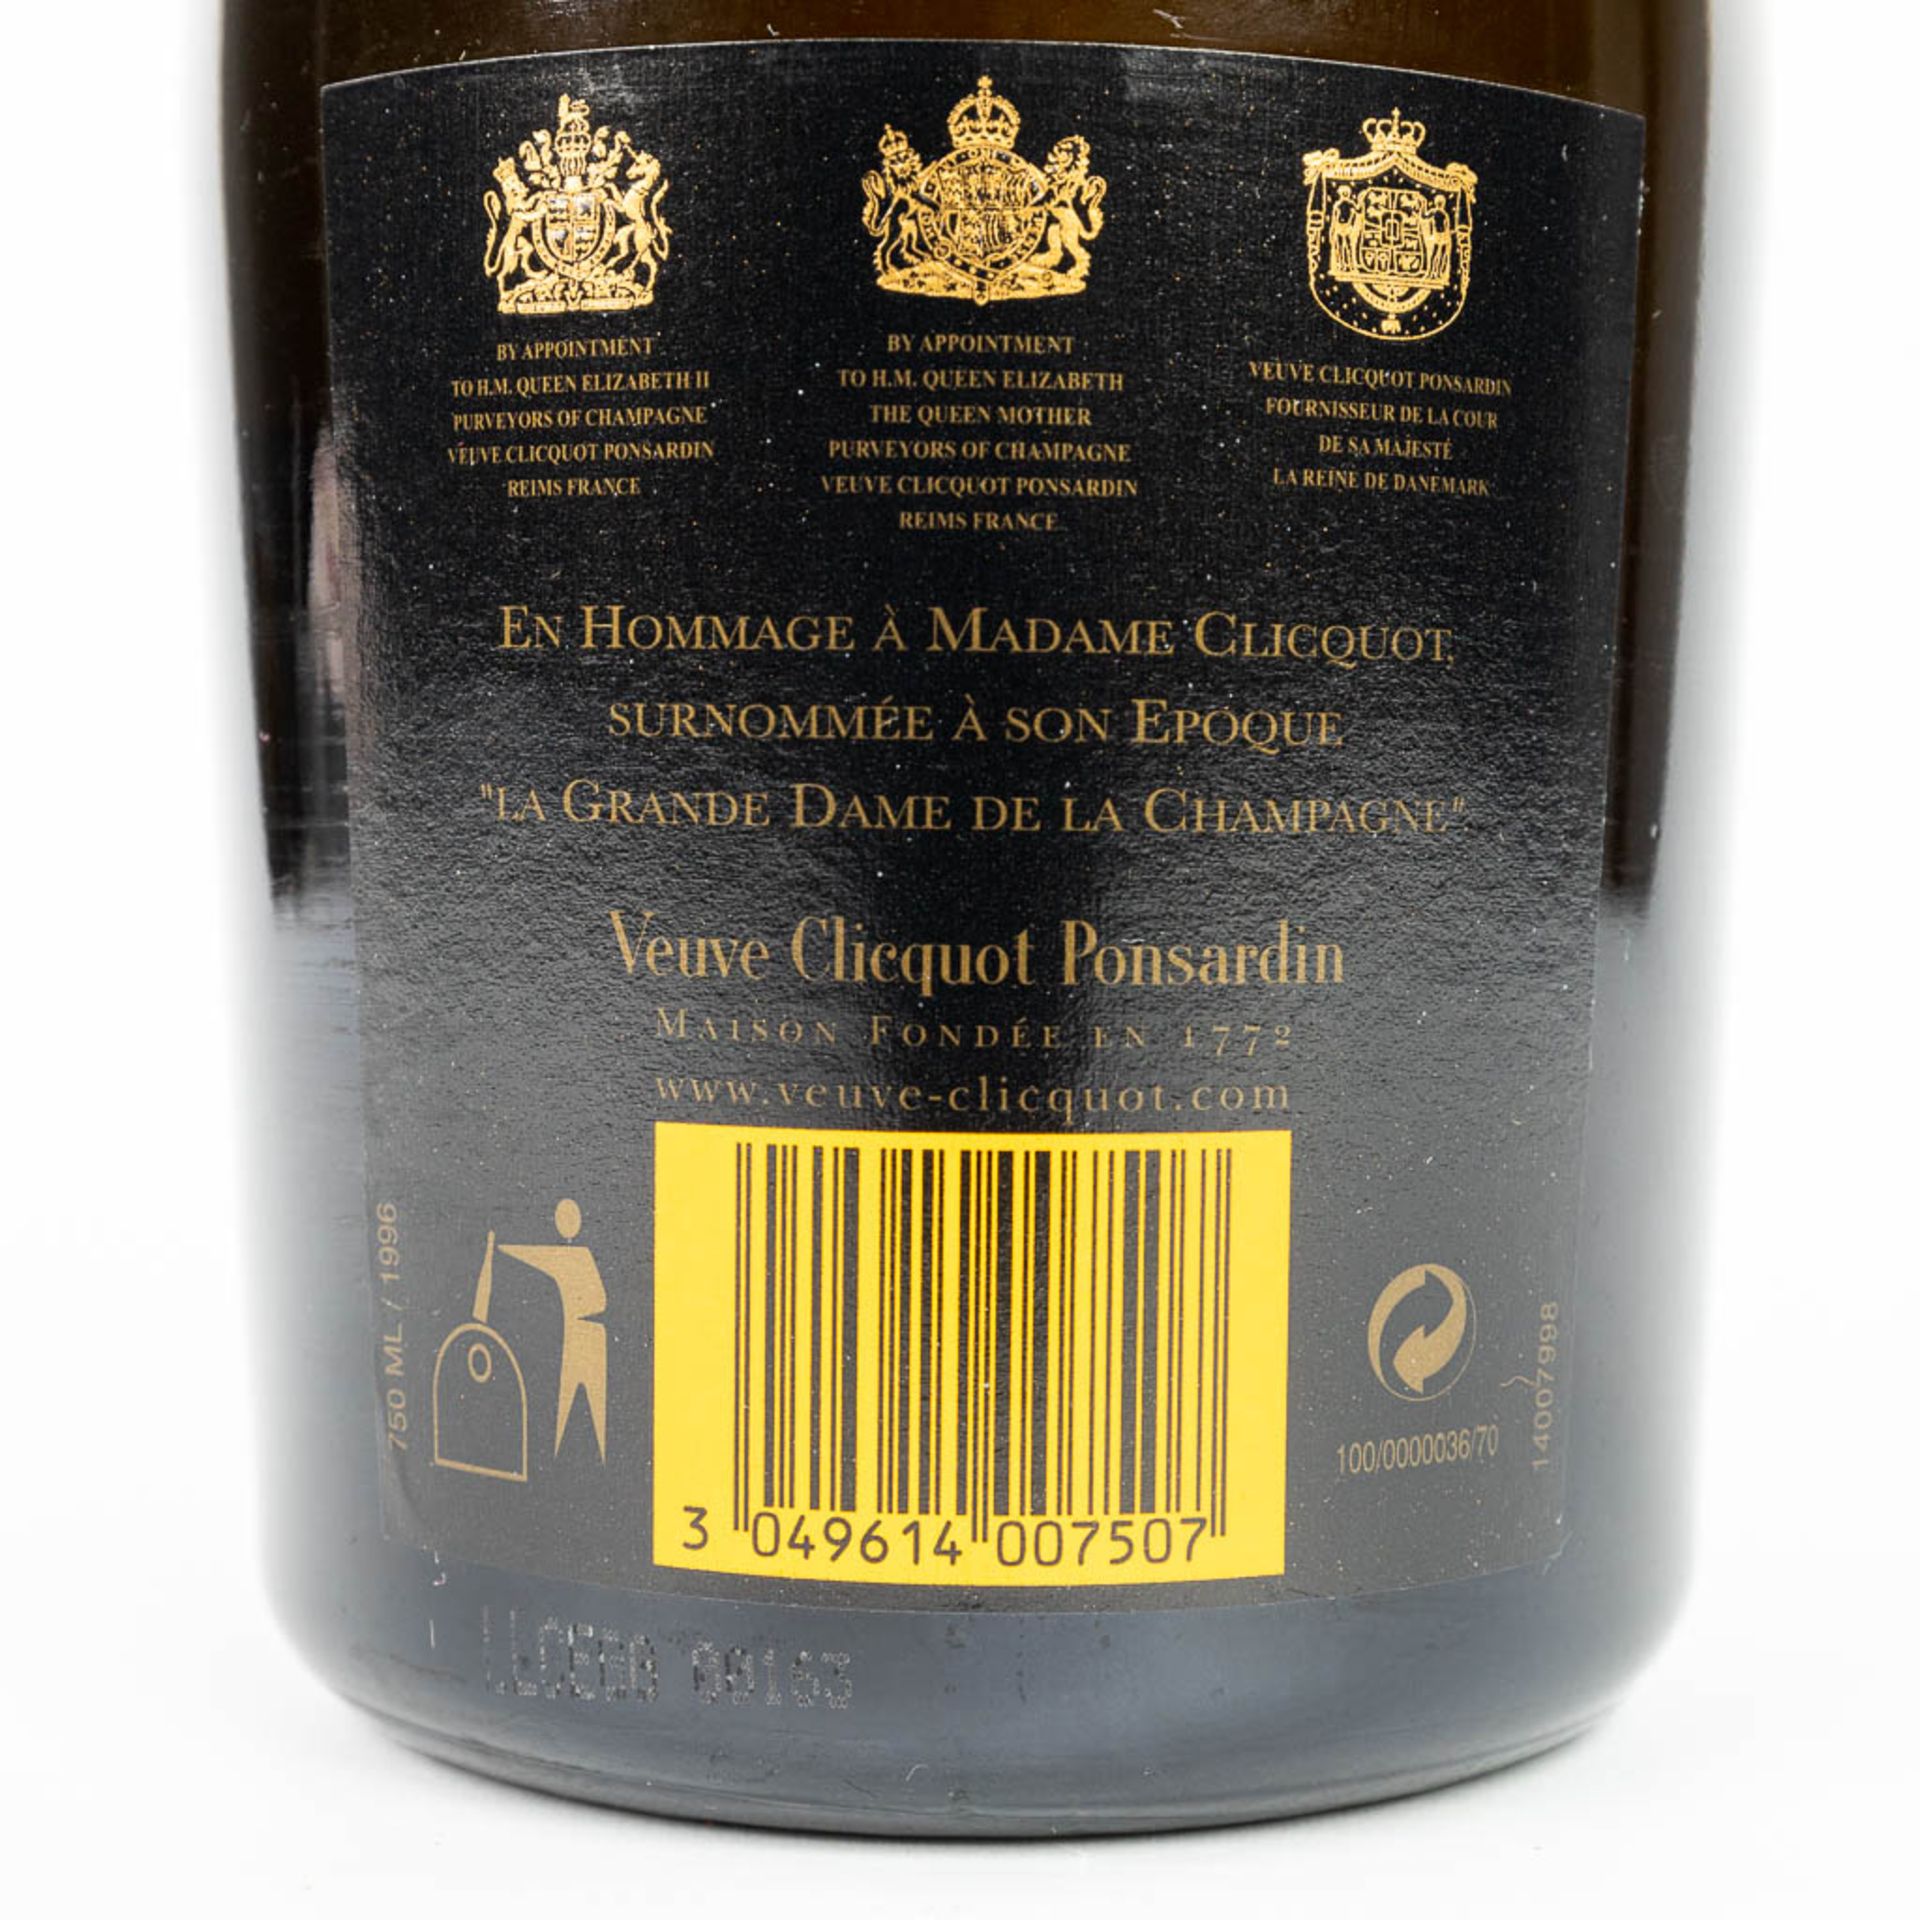 A bottle of Veuve Clicquot Ponsardin 1996 'La Grande Dame' limited edition by Emilio Pucci. - Bild 8 aus 14